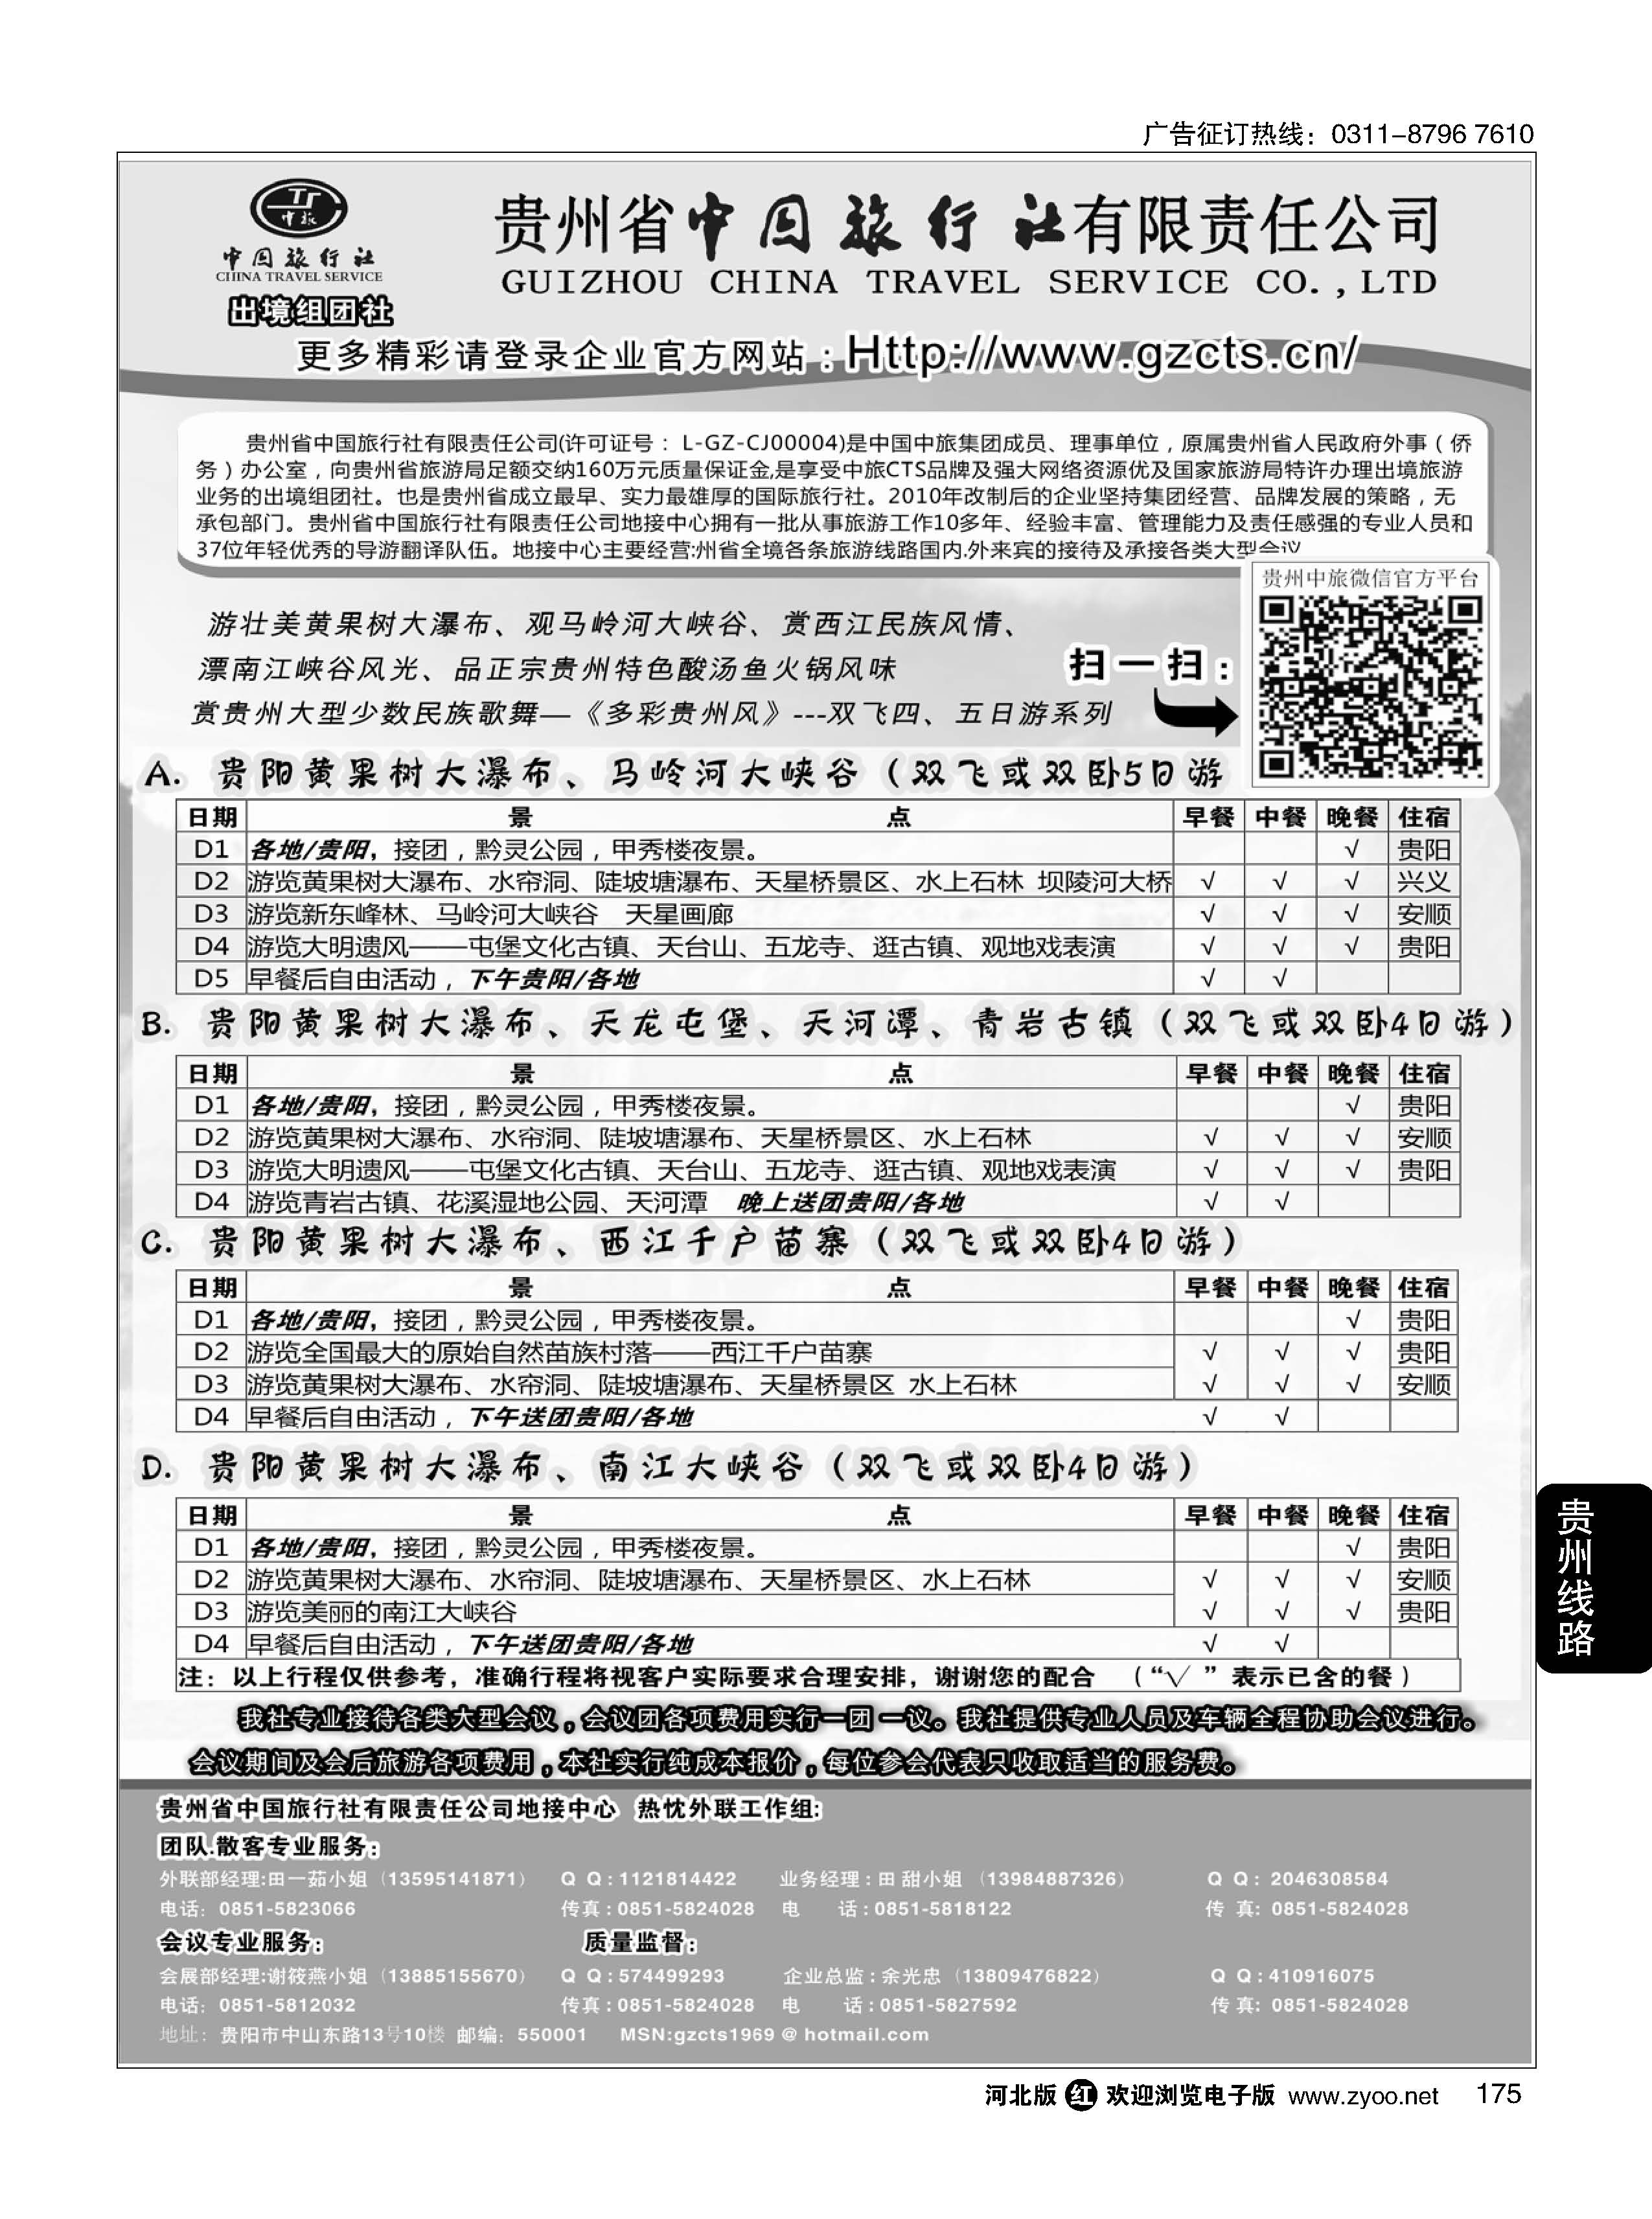 175 贵州省中国旅行社有限责任公司 